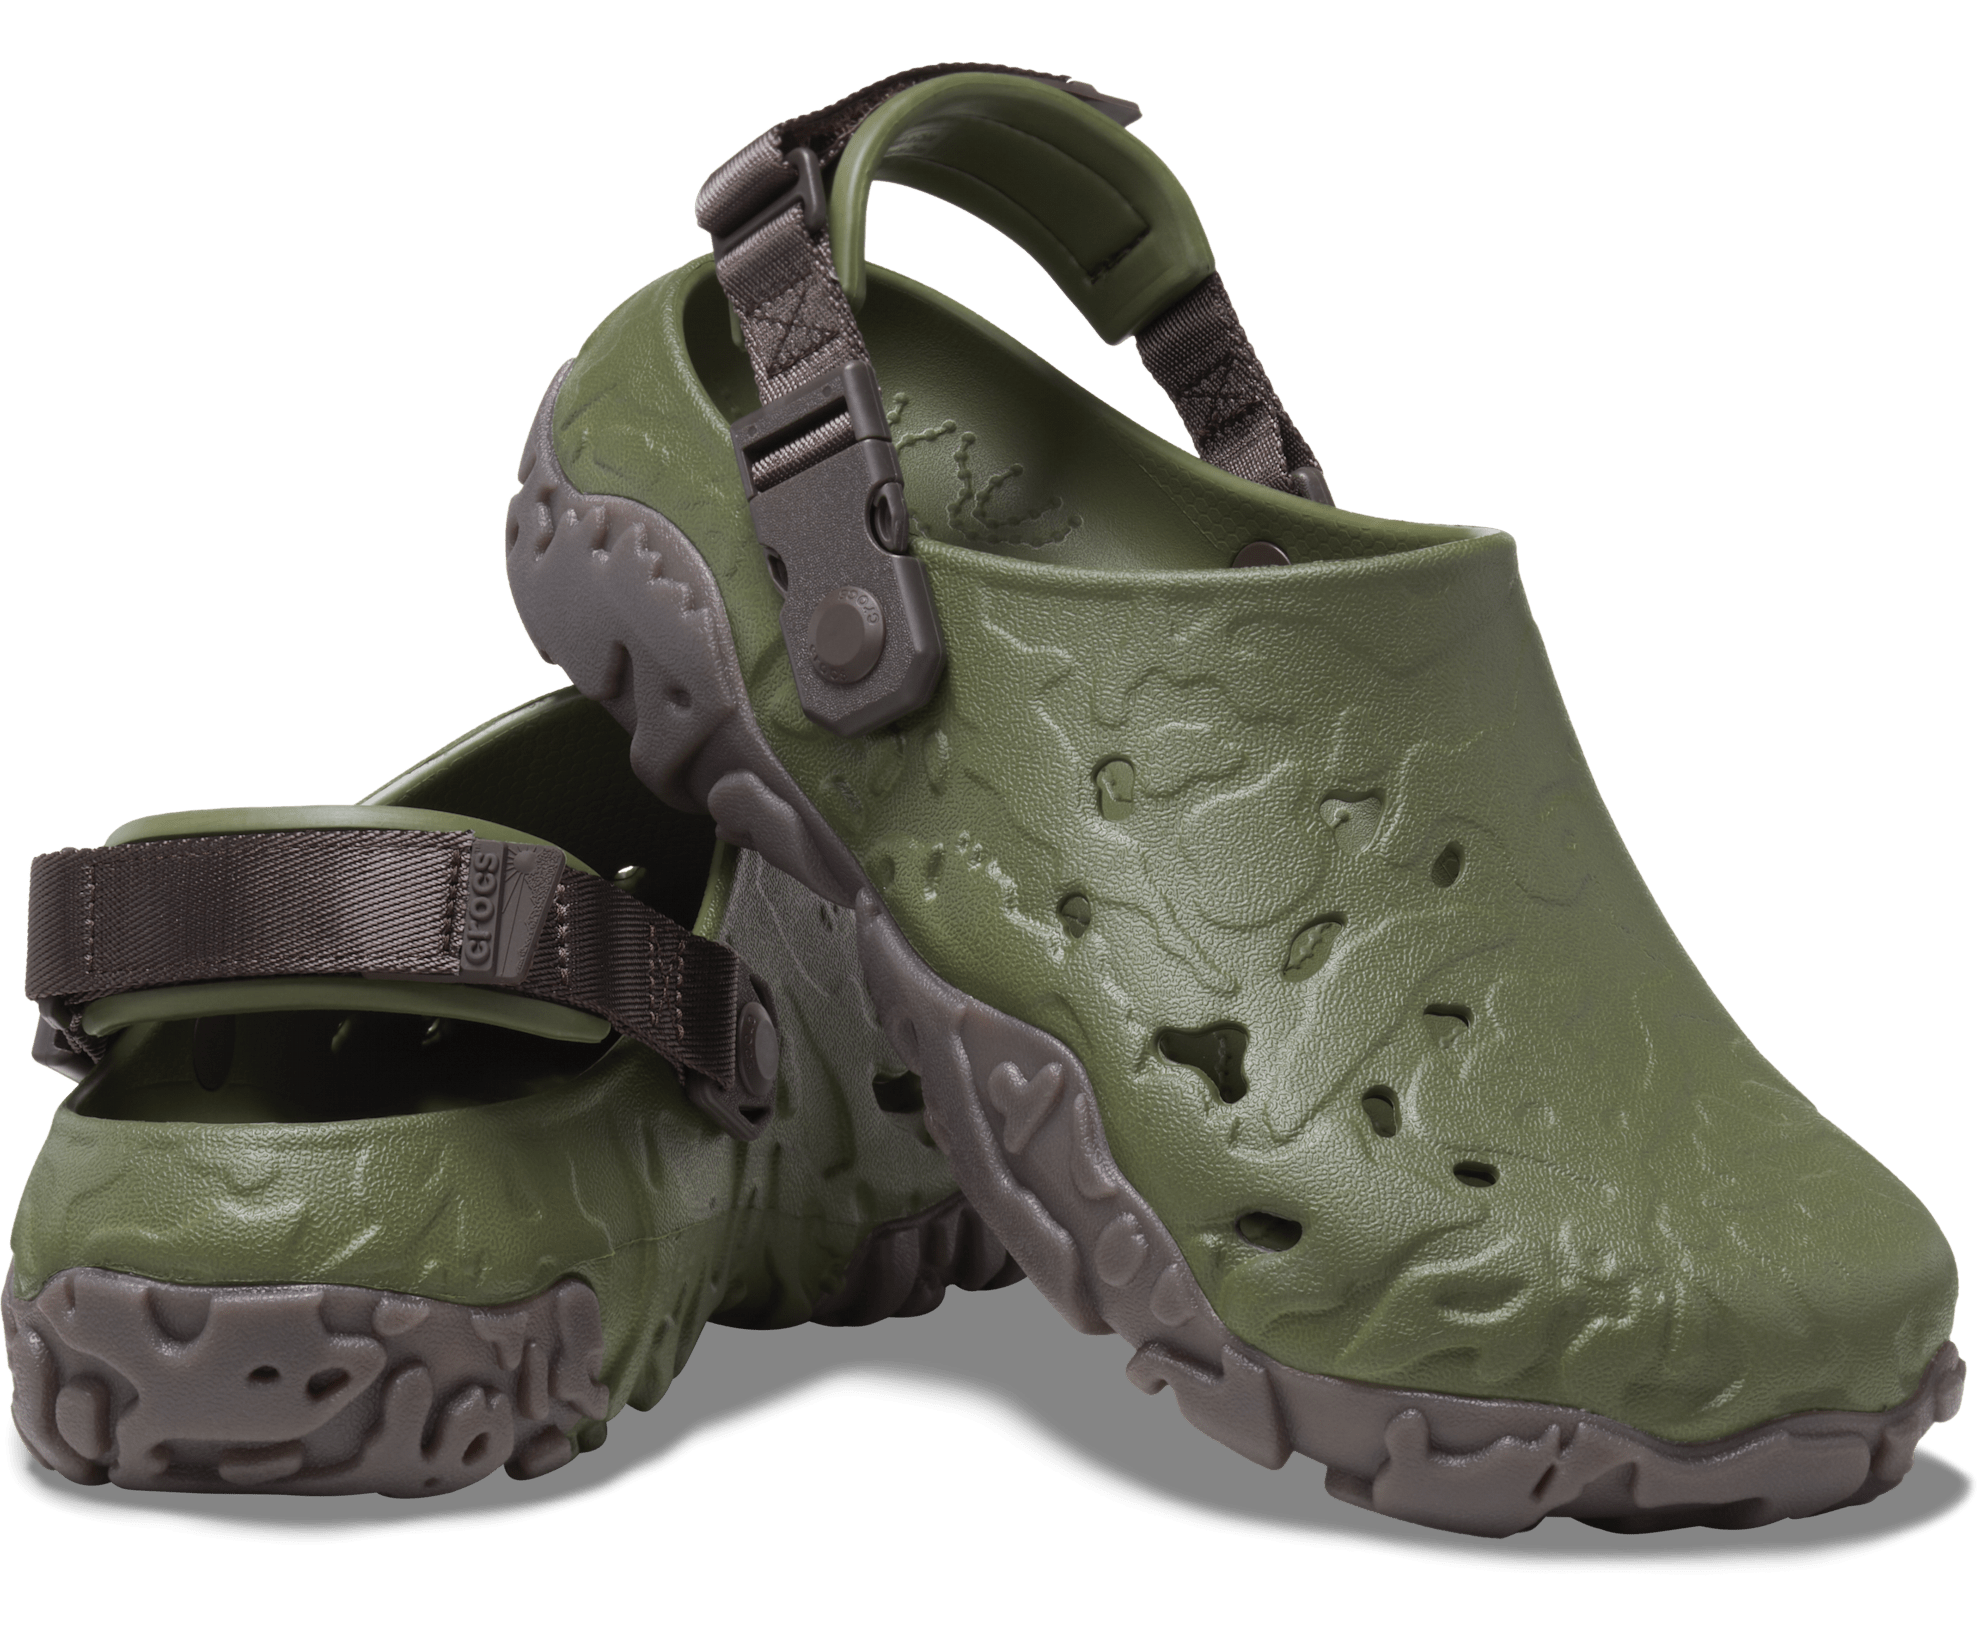 Crocs Unisex All Terrain Atlas Clog - Army Green / Espresso